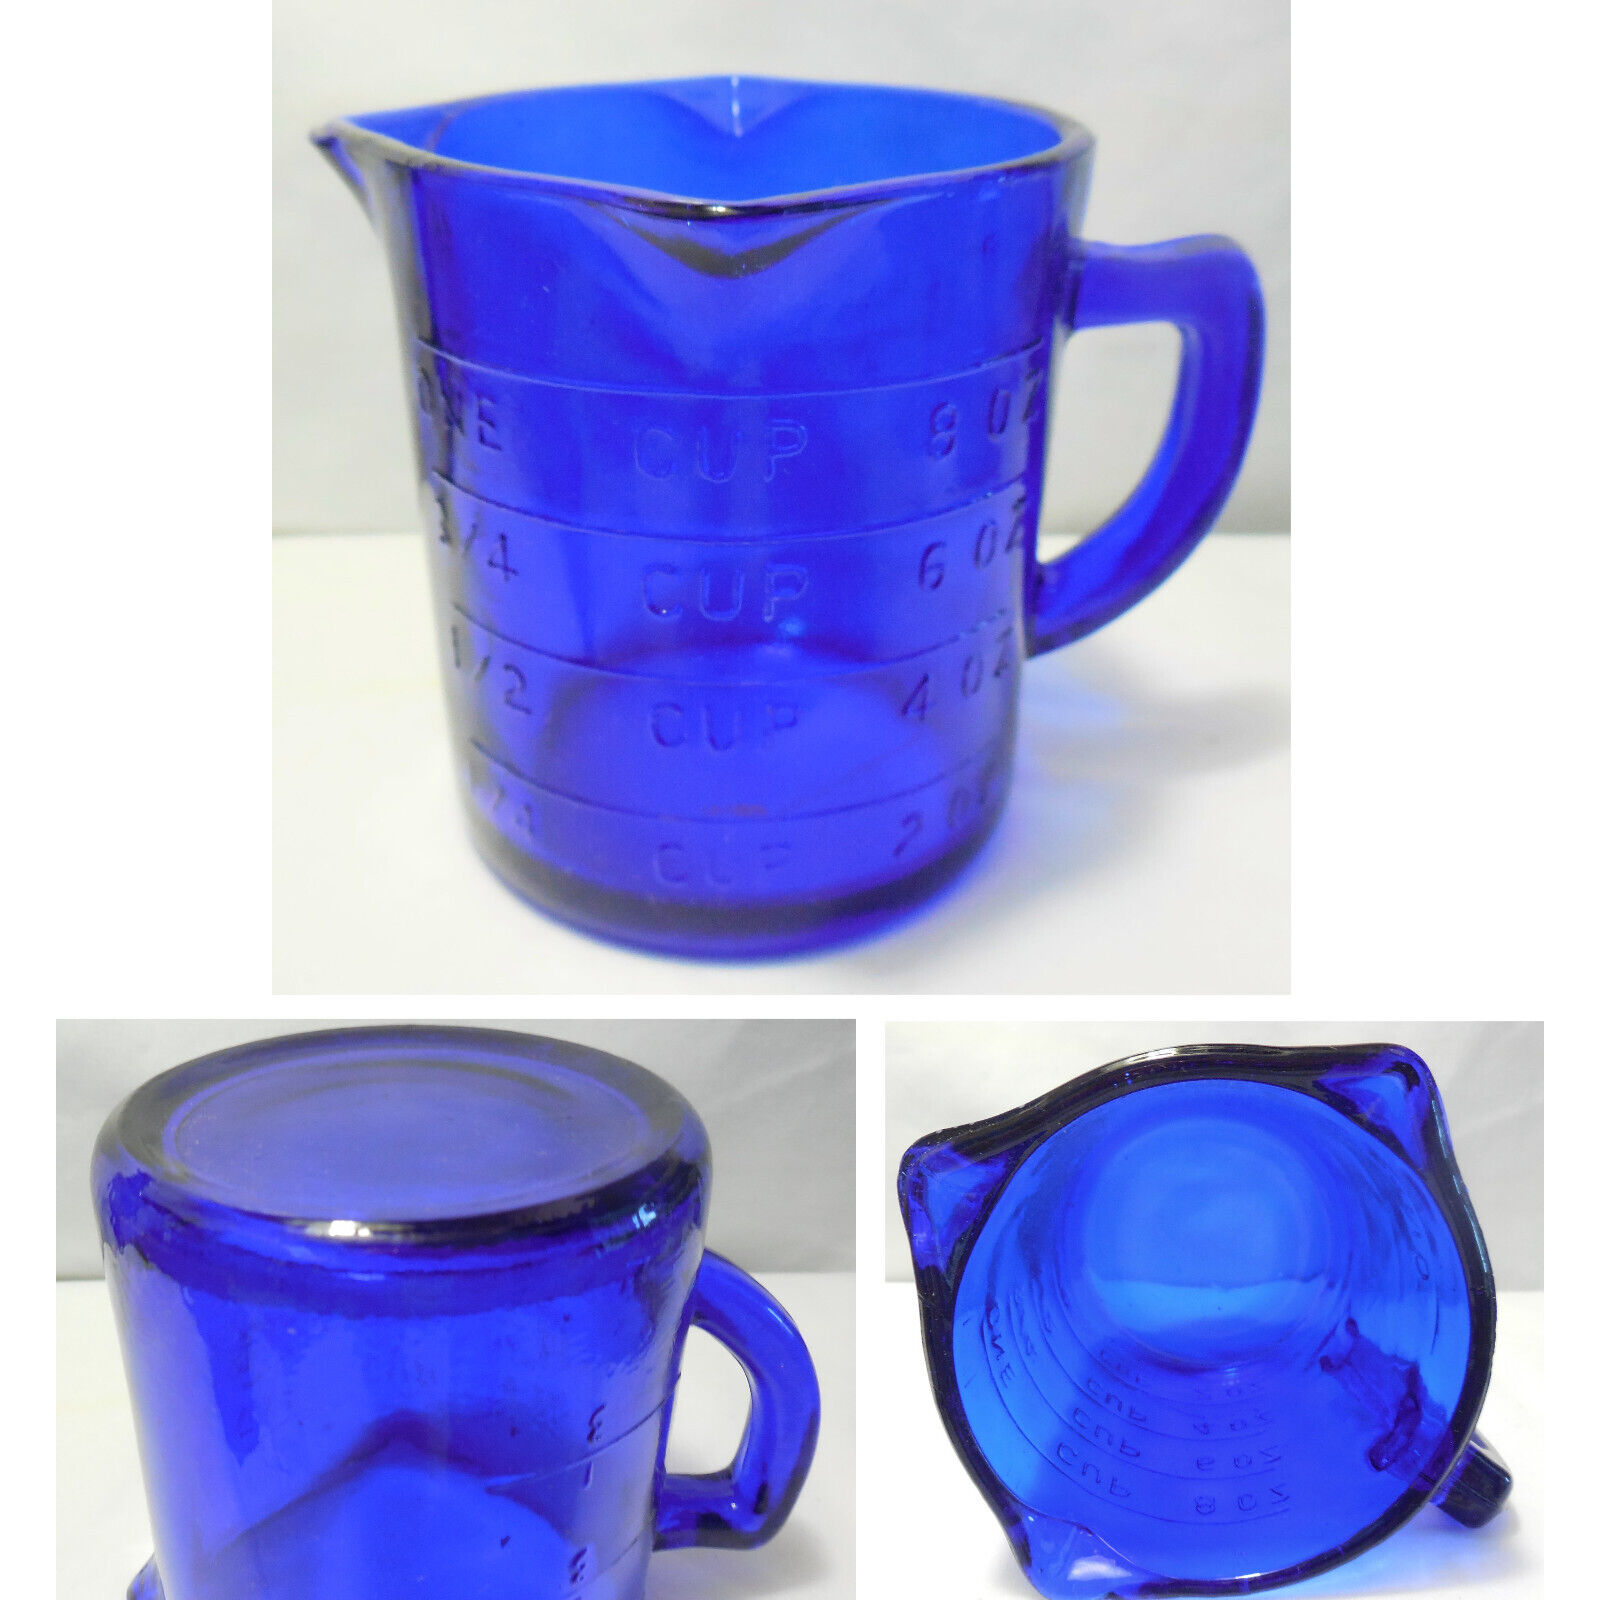 NEW Depression Style Cobalt Blue Glass 1 c Measuring Cup 3 Pour Spouts